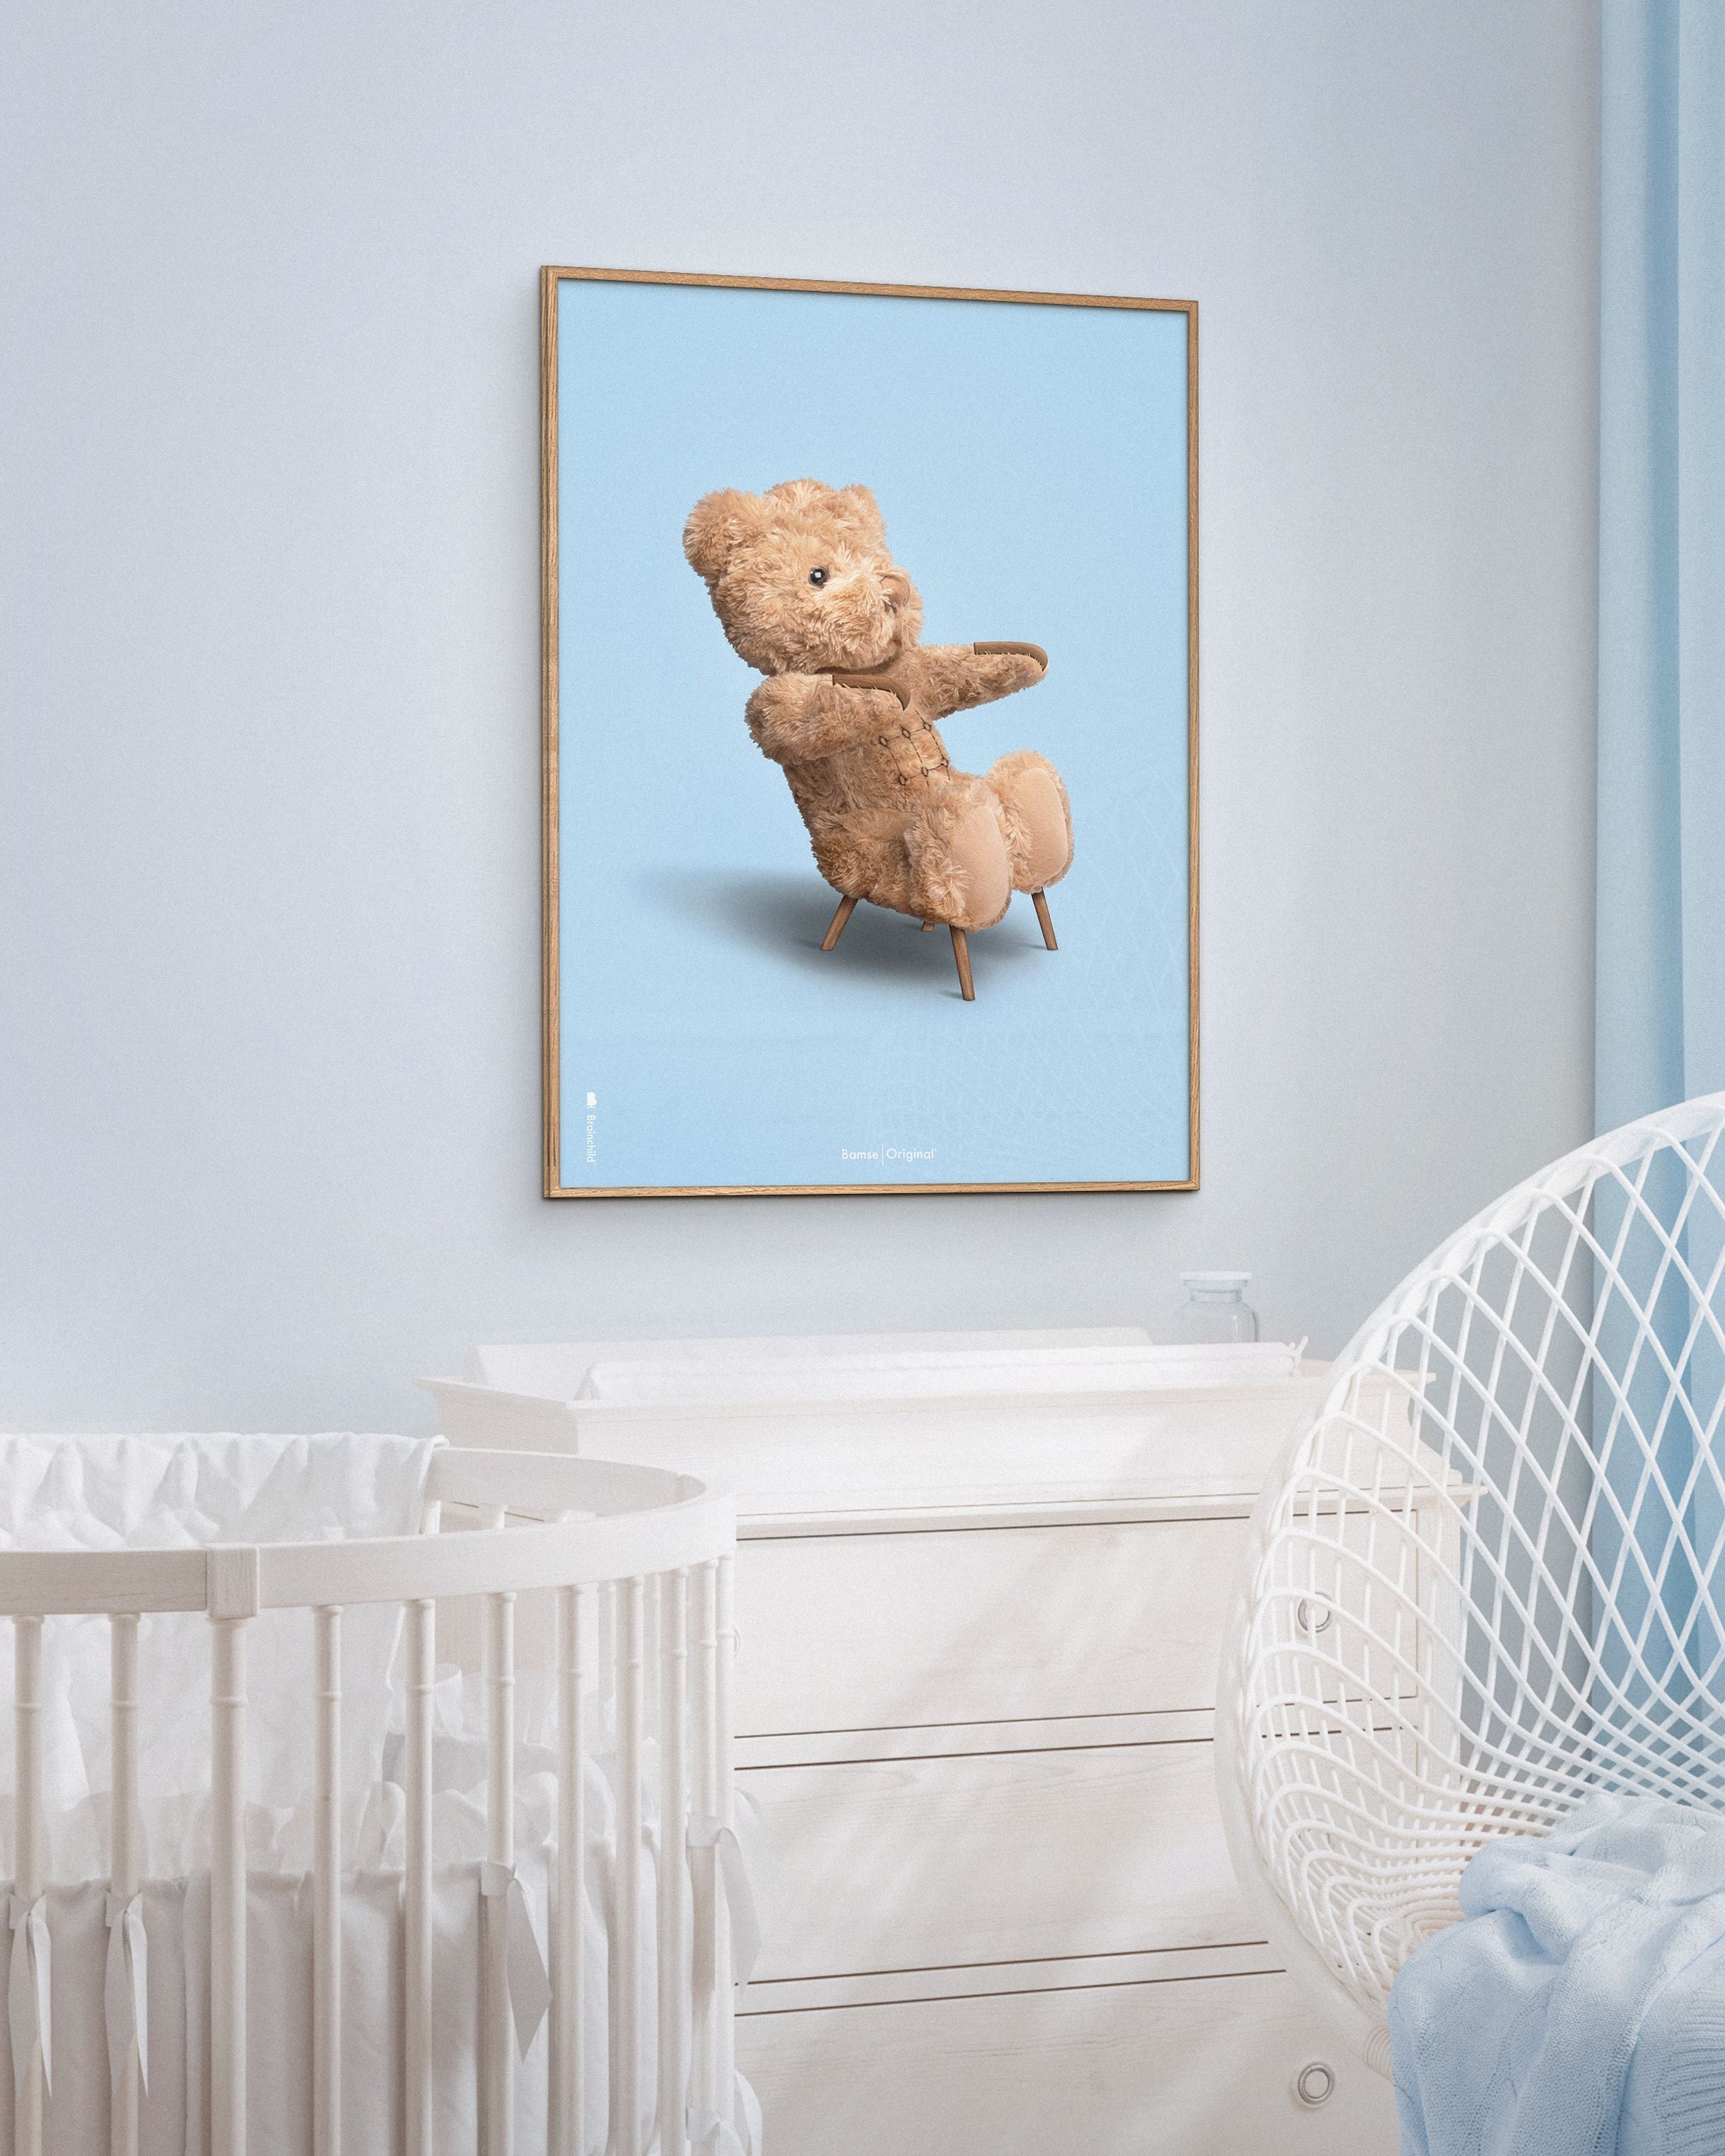 Brainchild Teddy Bear Classic Poster Frame lavet af let træ ramme 50x70 cm, lyseblå baggrund